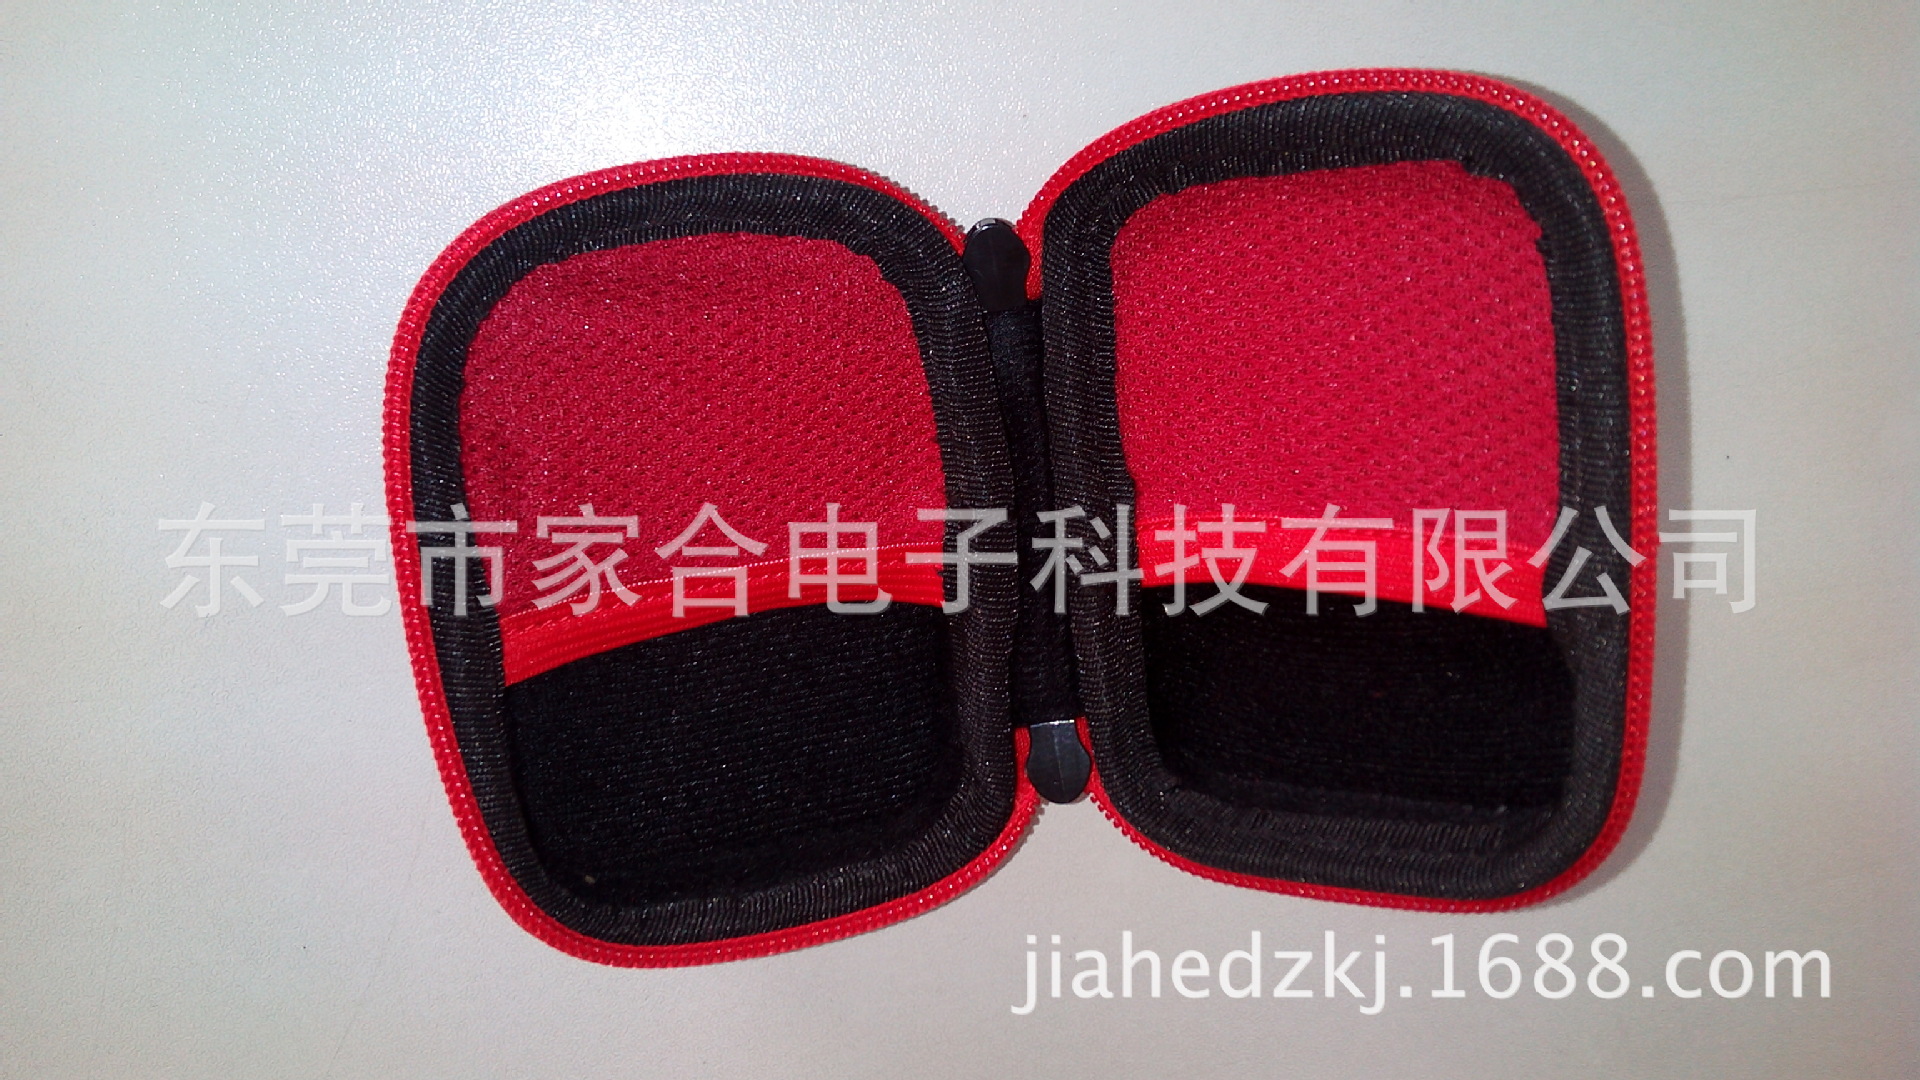 耳機箱包JH2014001 (7)